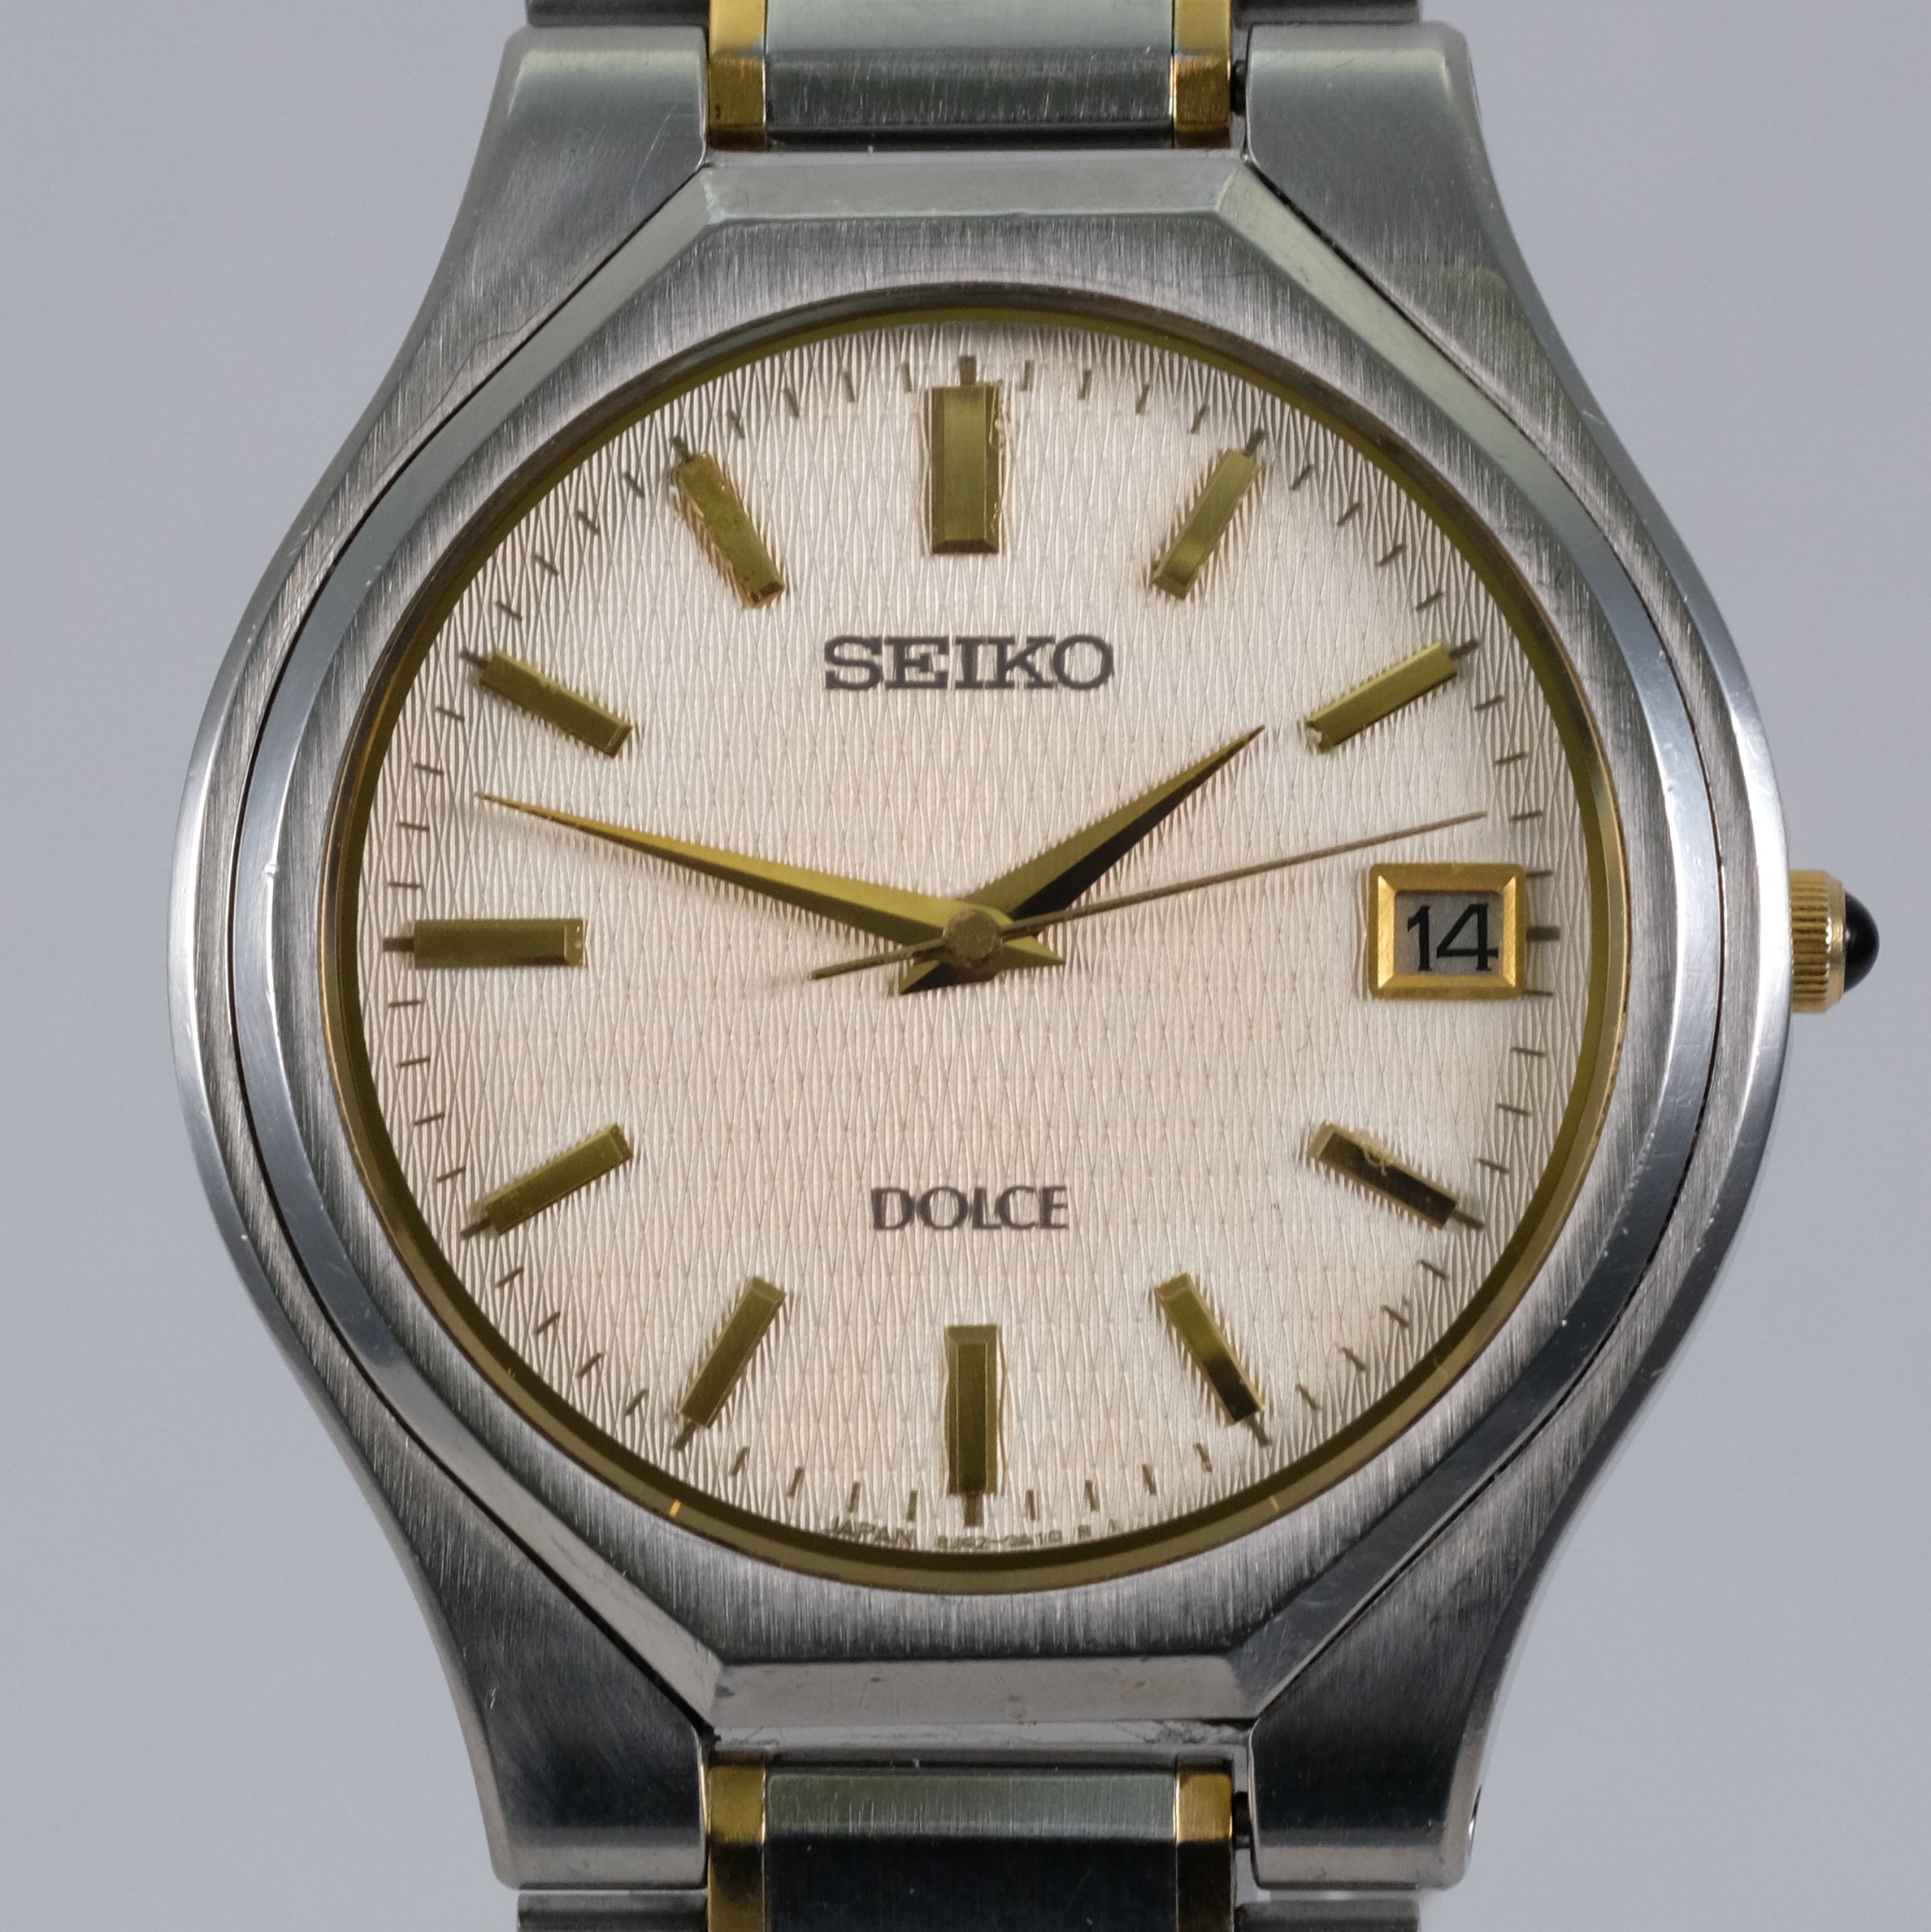 2001 Seiko Dolce 8J41-0A10